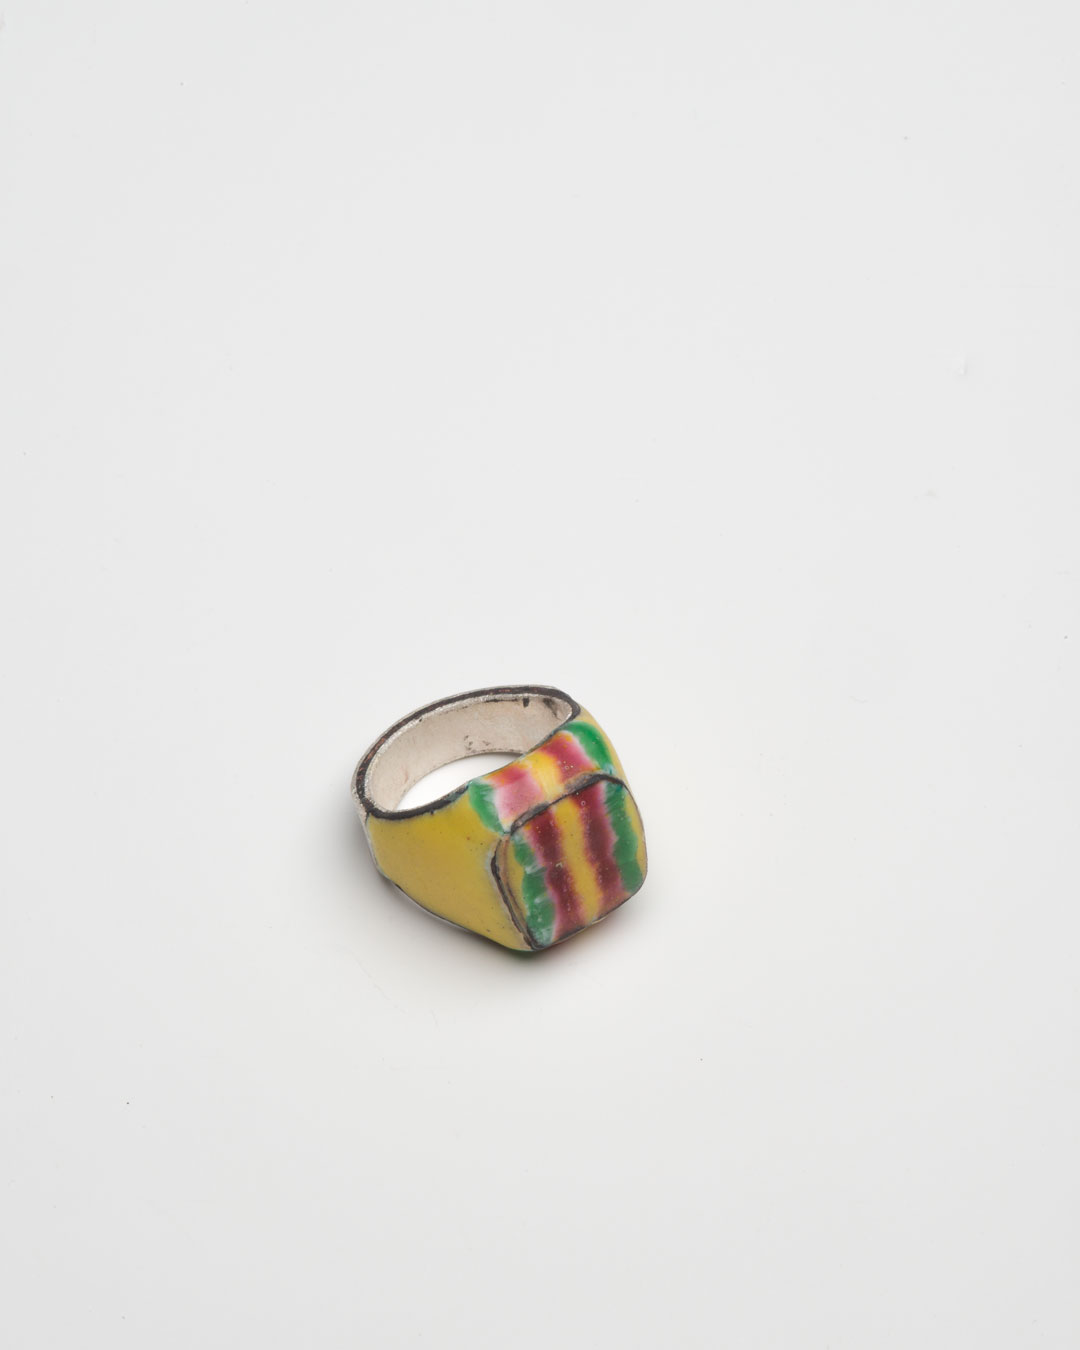 Aaron Decker, Stripes, 2018, ring; enamel, copper, silver 25 x 21 x 18 mm, €1000